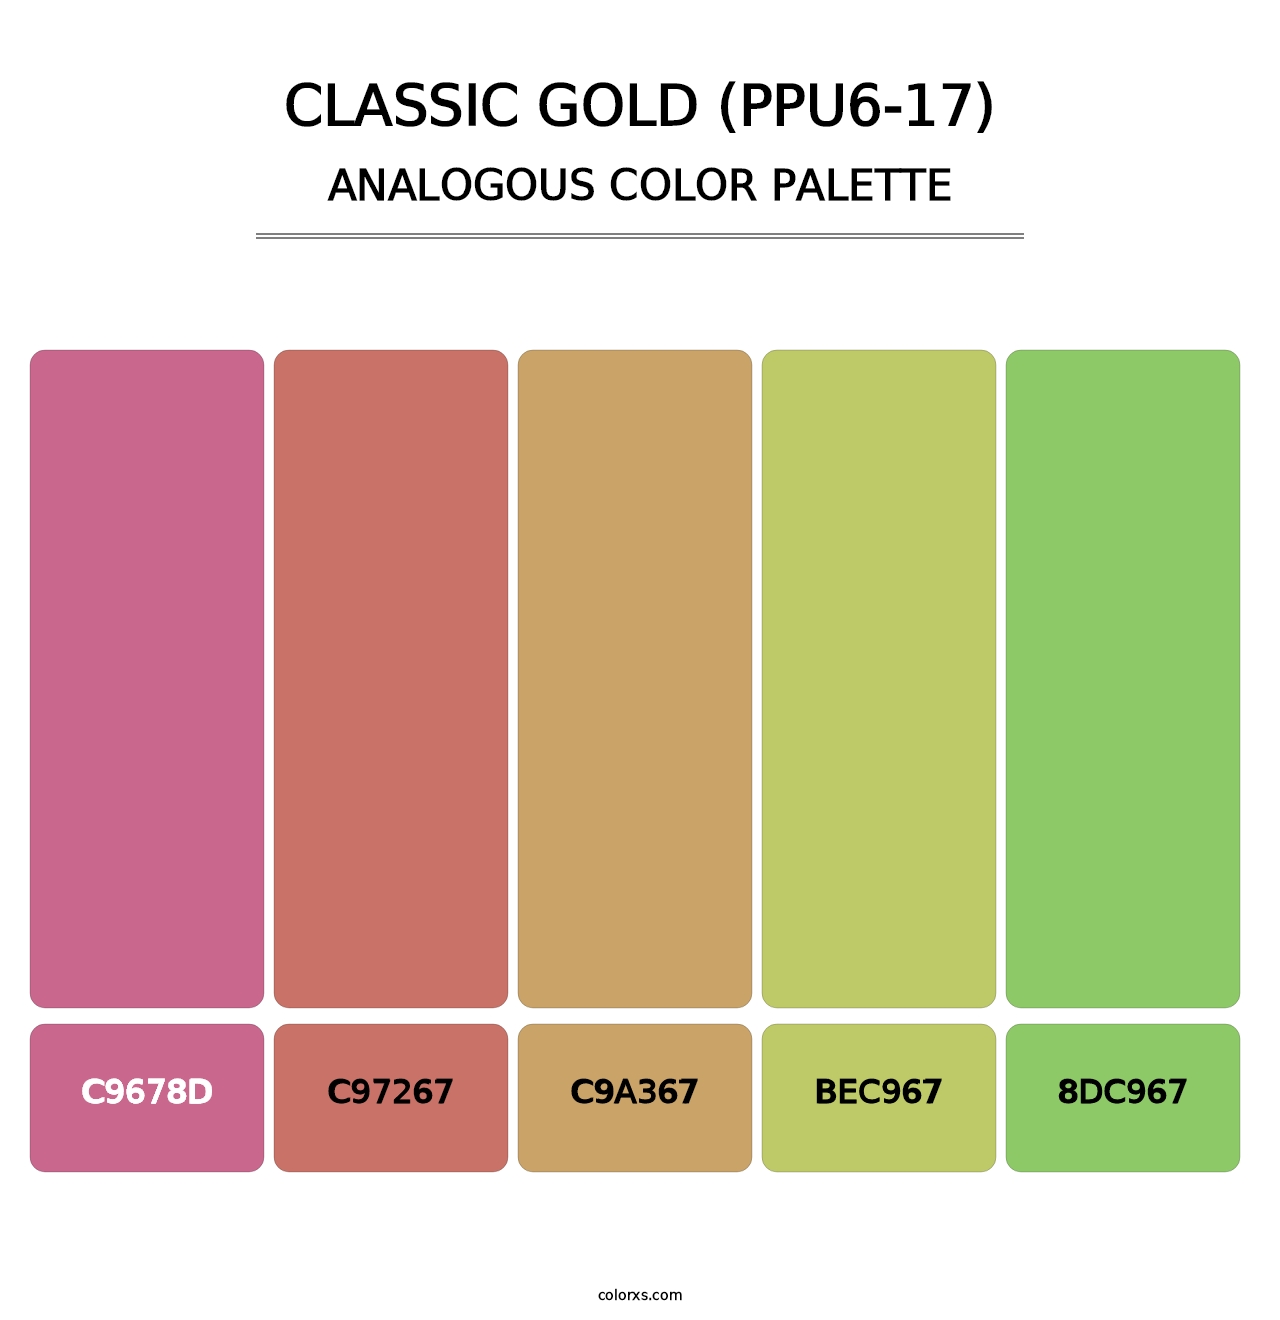 Classic Gold (PPU6-17) - Analogous Color Palette